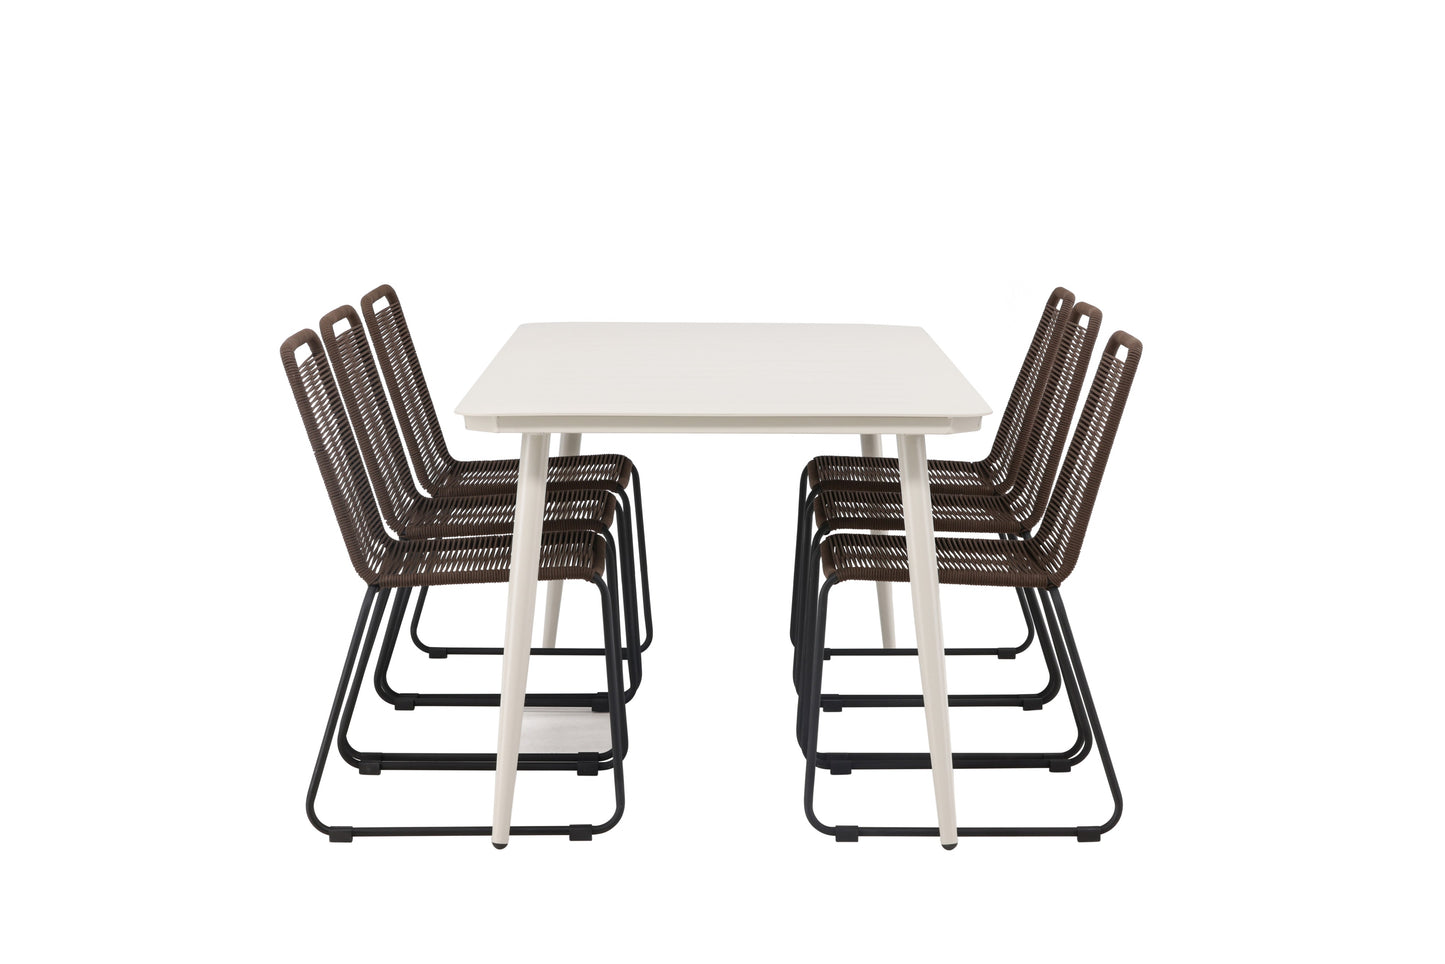 Lia - Spisebord, Beige - 200*90 + Lidos stol Aluminium - Sort